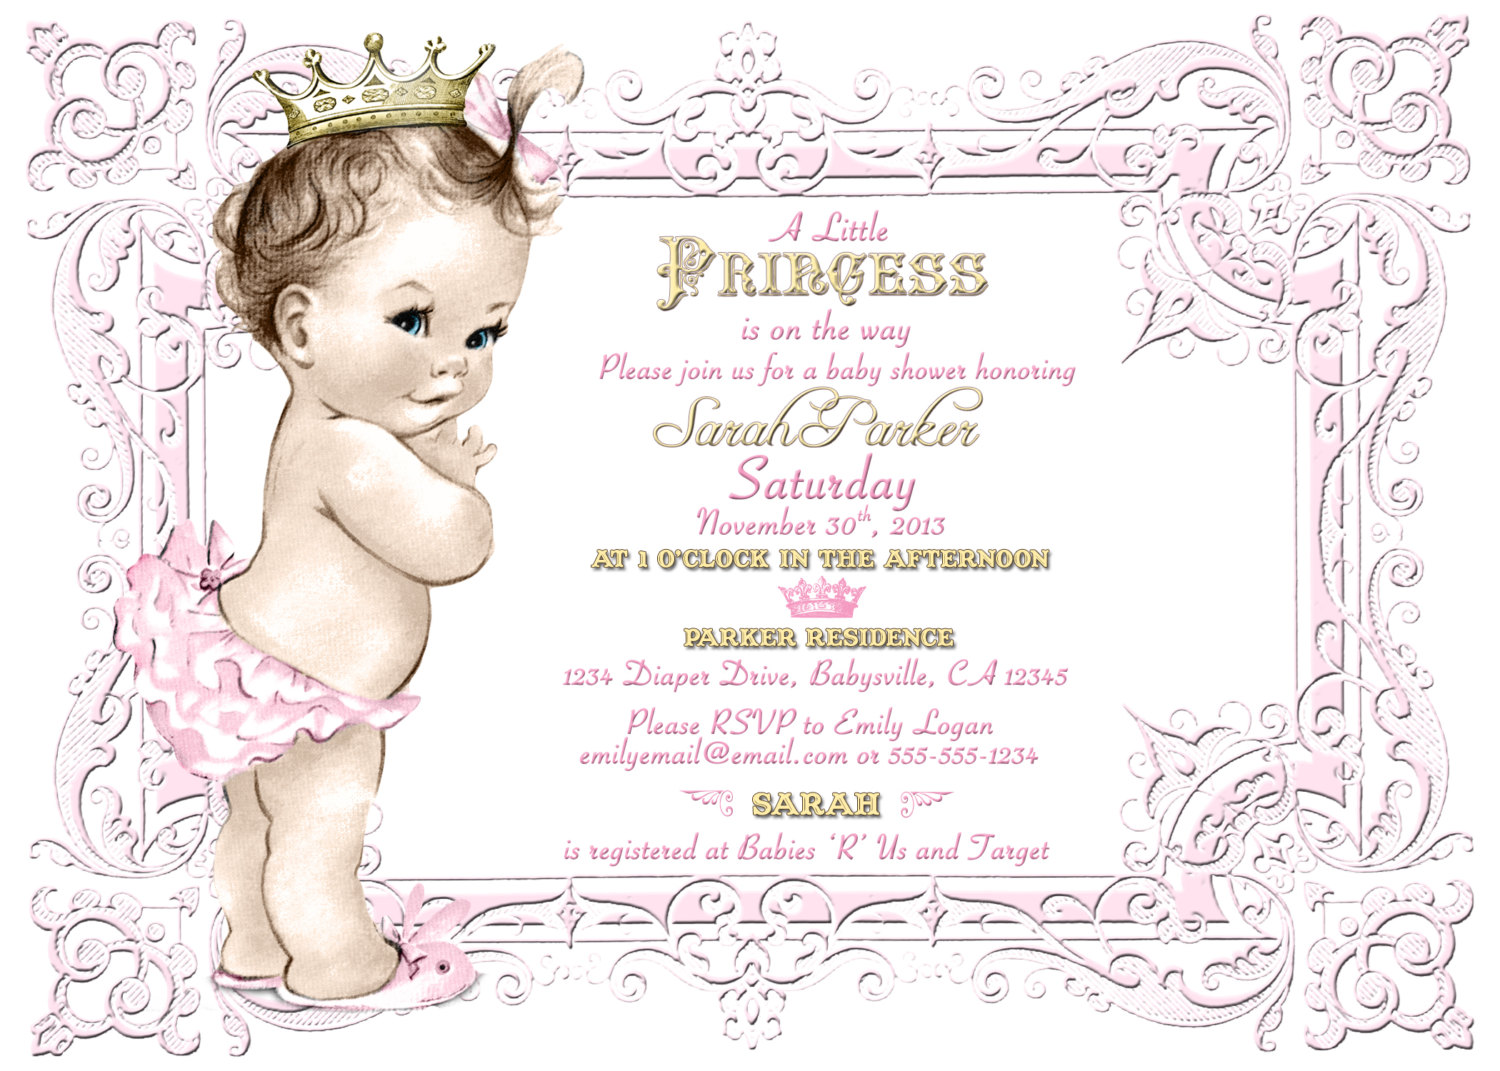 babies clipart princess